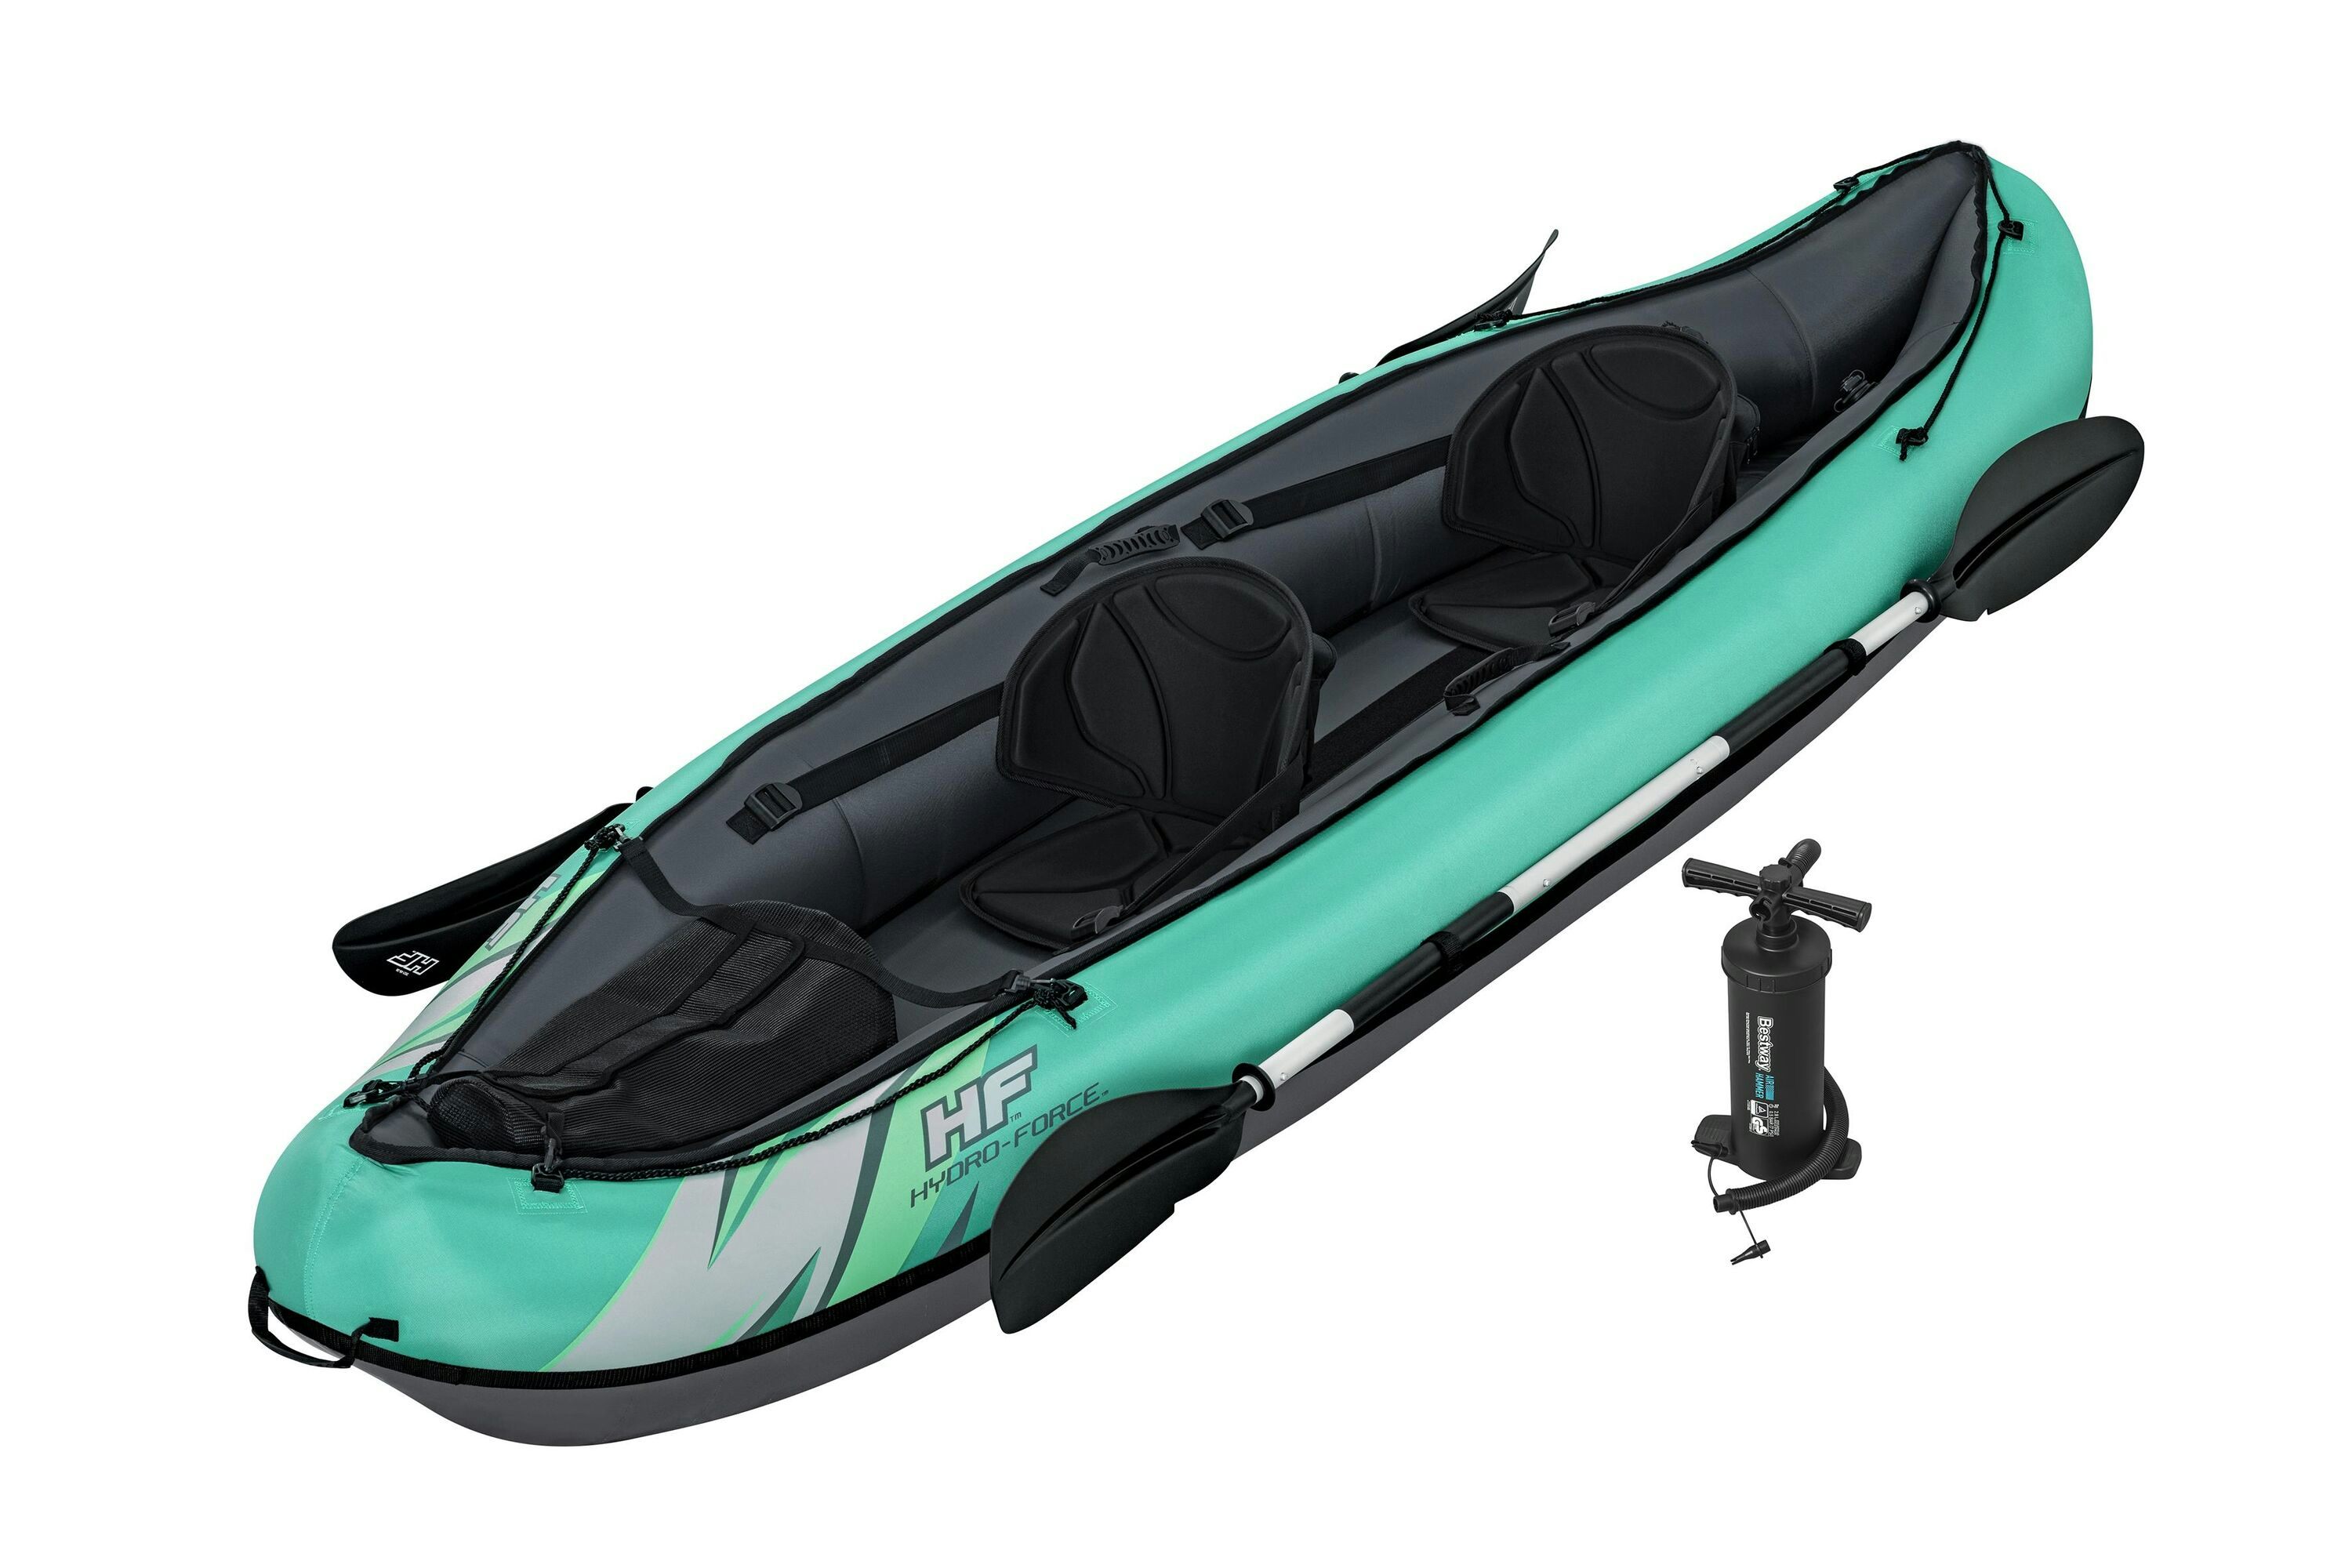 Sports d'eau Kayak gonflable Hydro-Force™ Ventura Elite X2 330 x 86 cm 2 adultes, pagaie, pompe Bestway 1